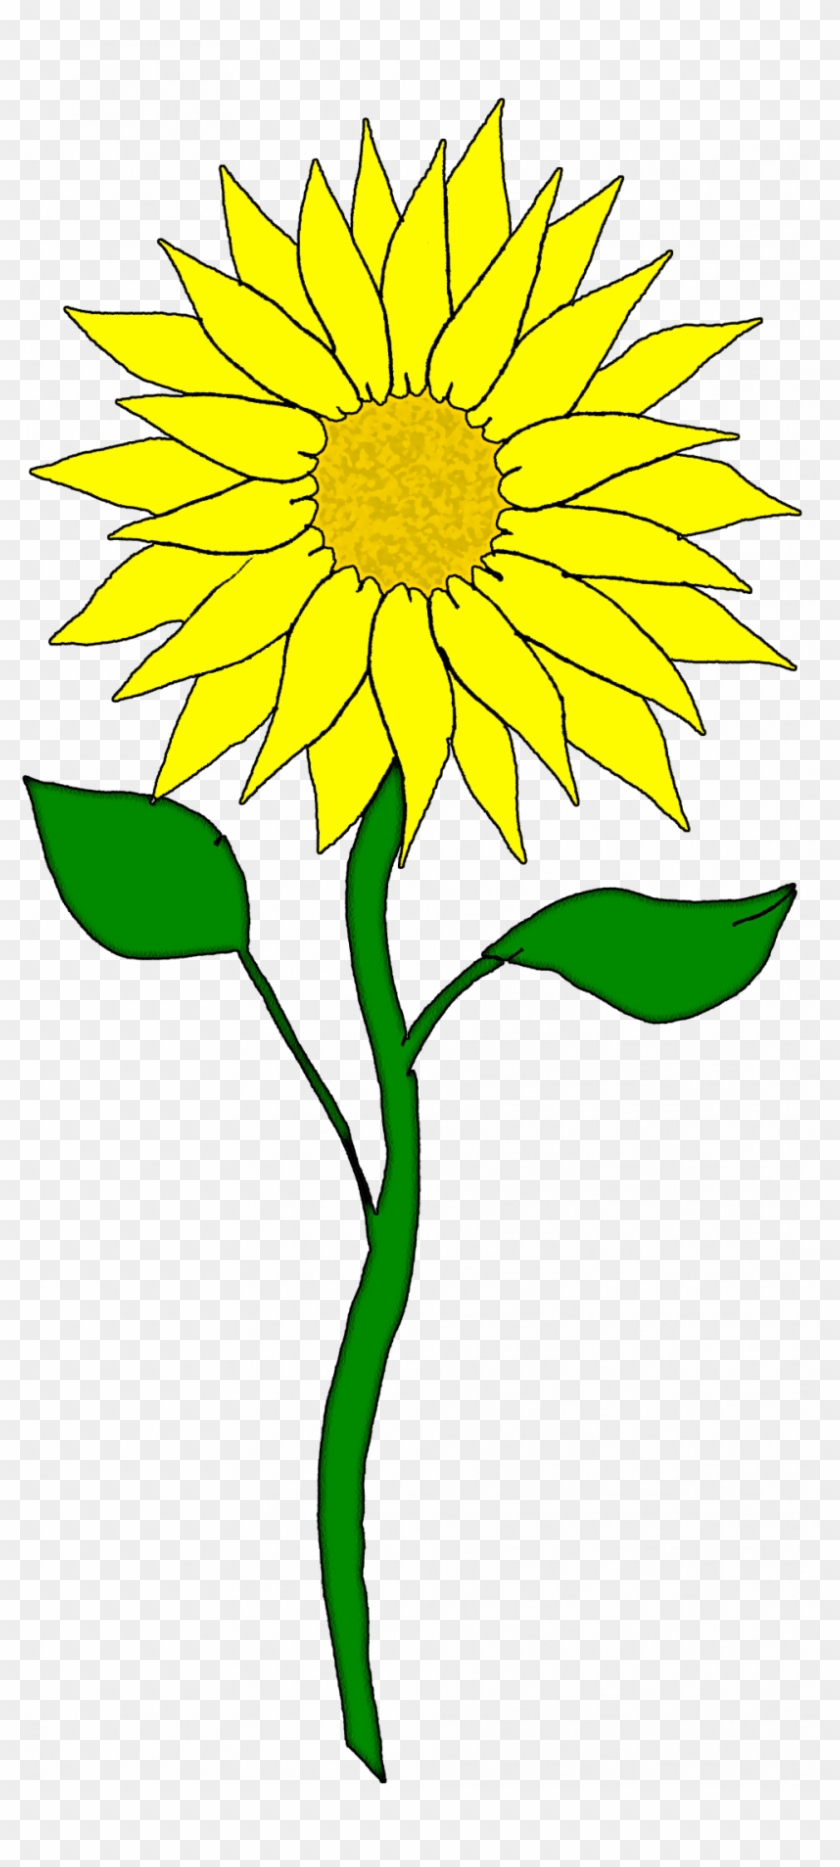 Sunflower Clipart #1331938